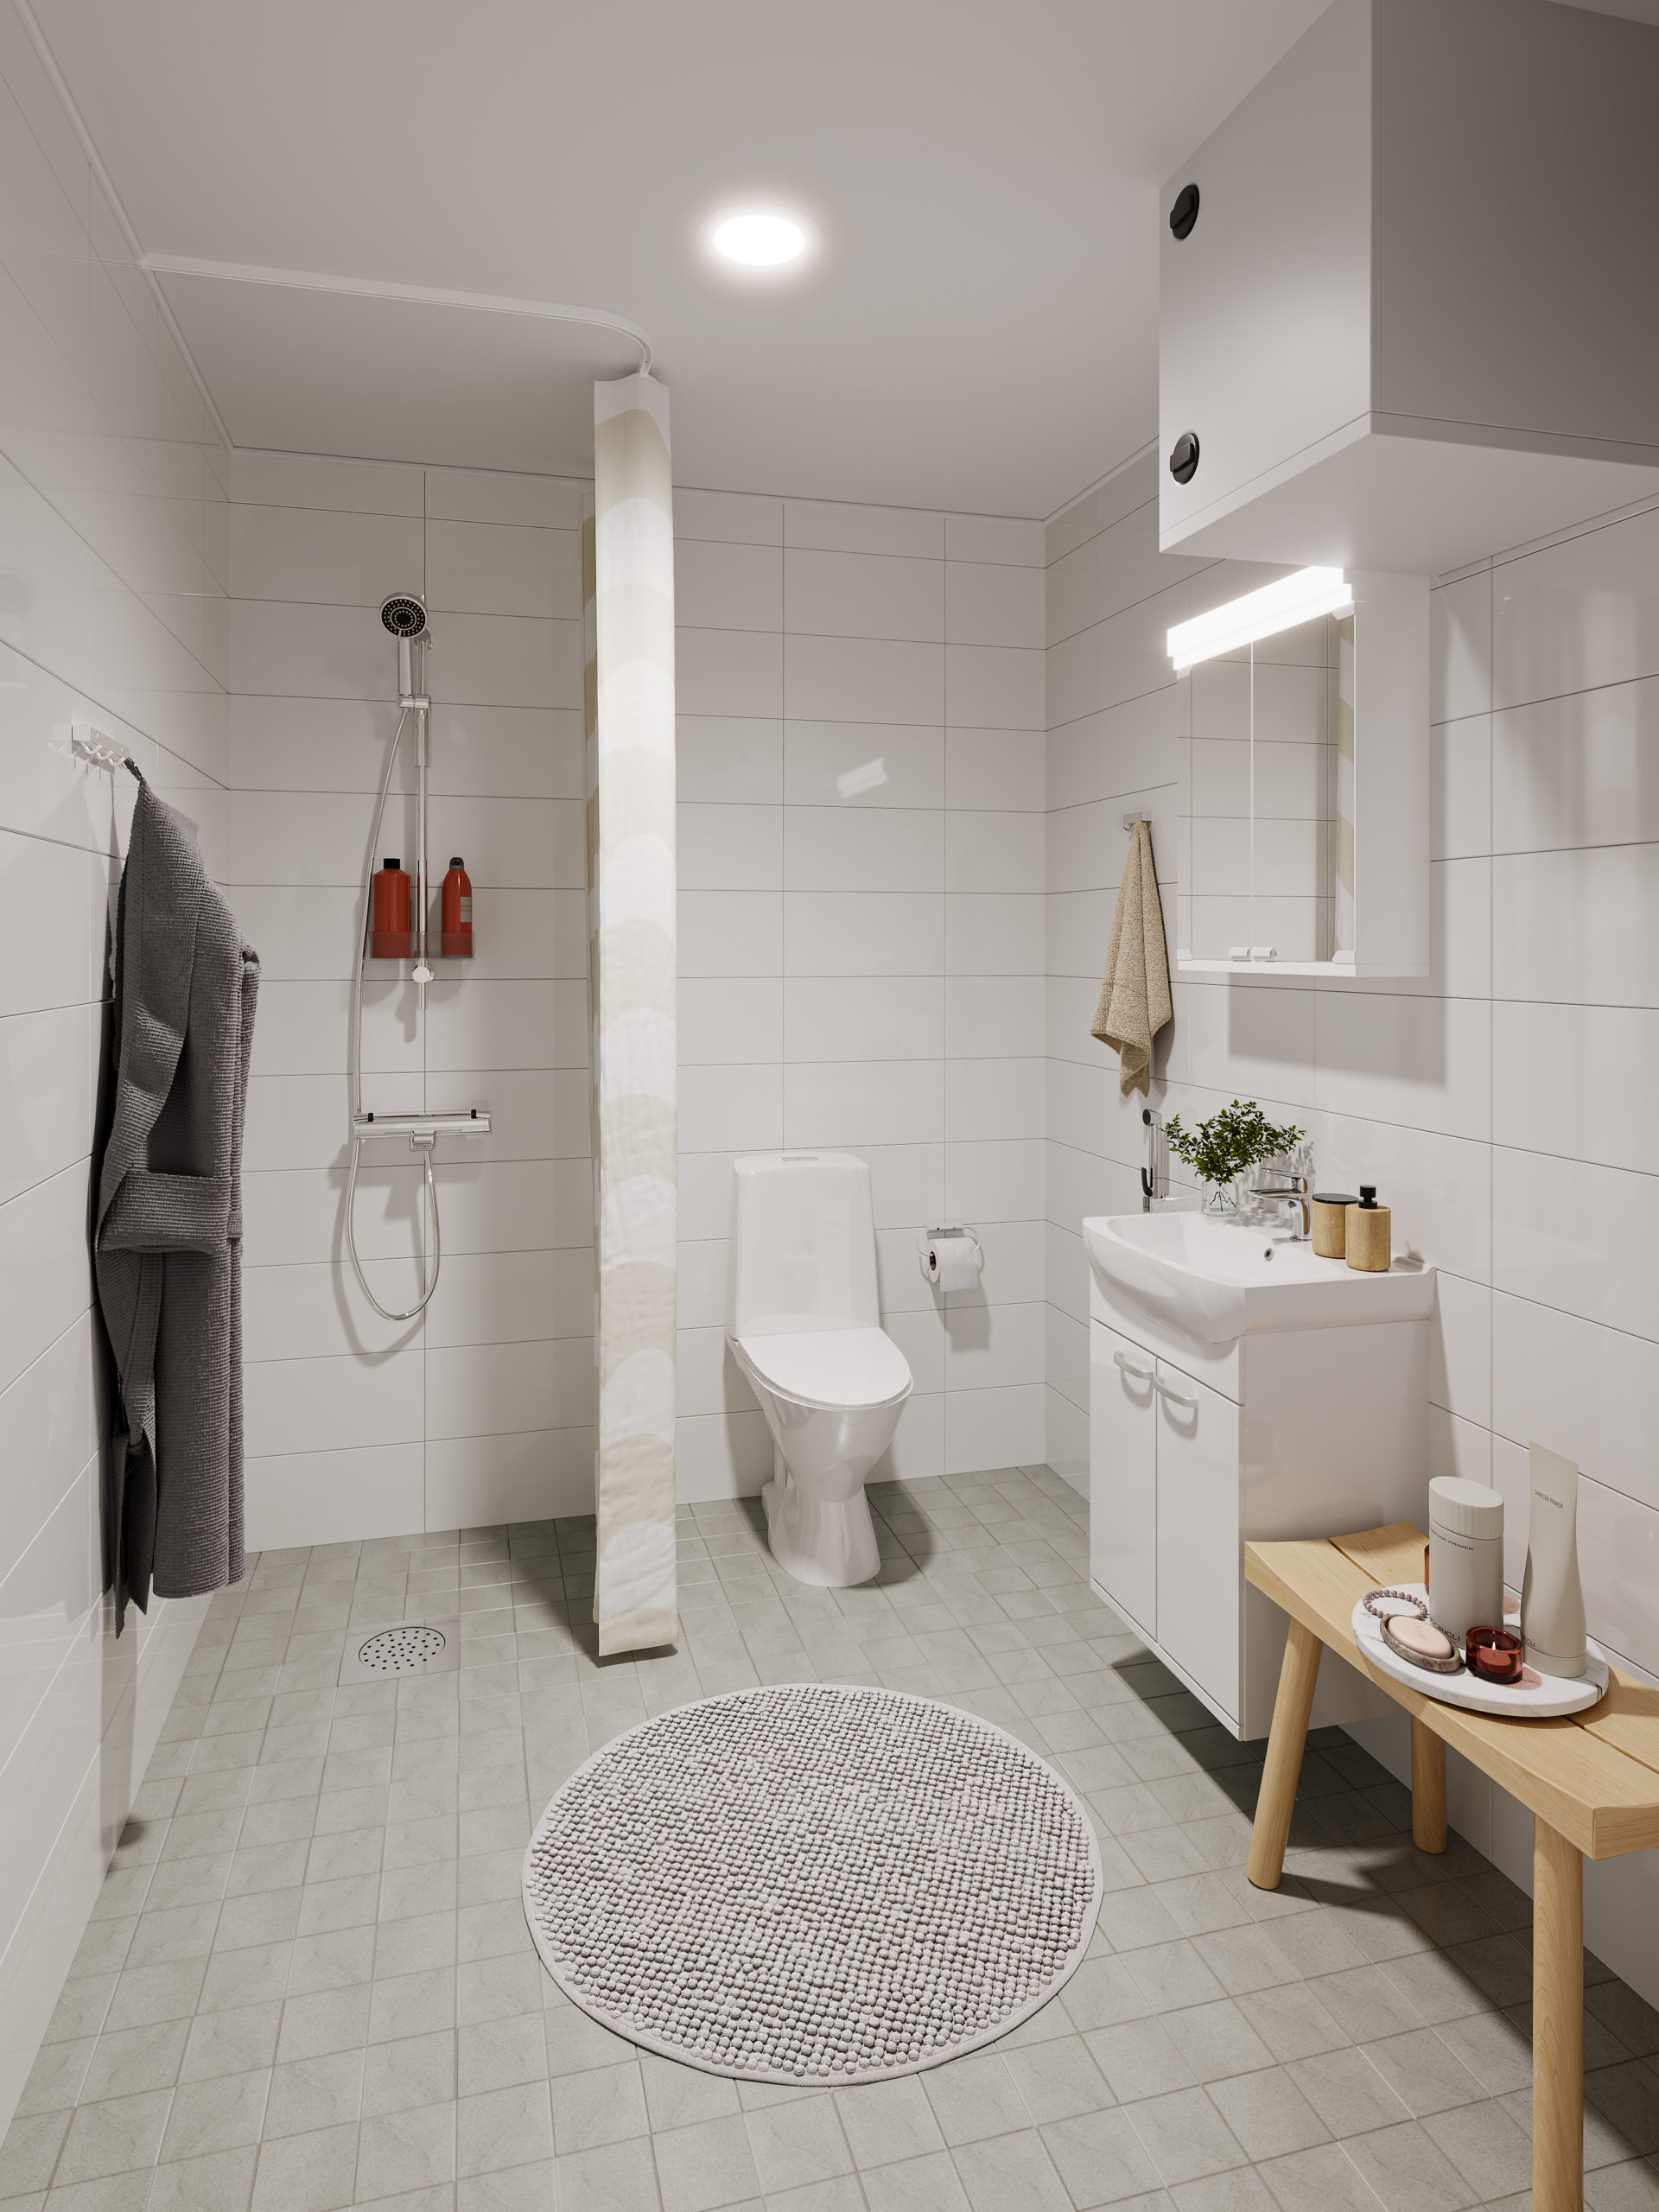 Svinhufvudinkadun opiskelija-asunnon kylpyhuonenäkymä. Kylpyhuoneessa suihku ja vaaleat laatat.